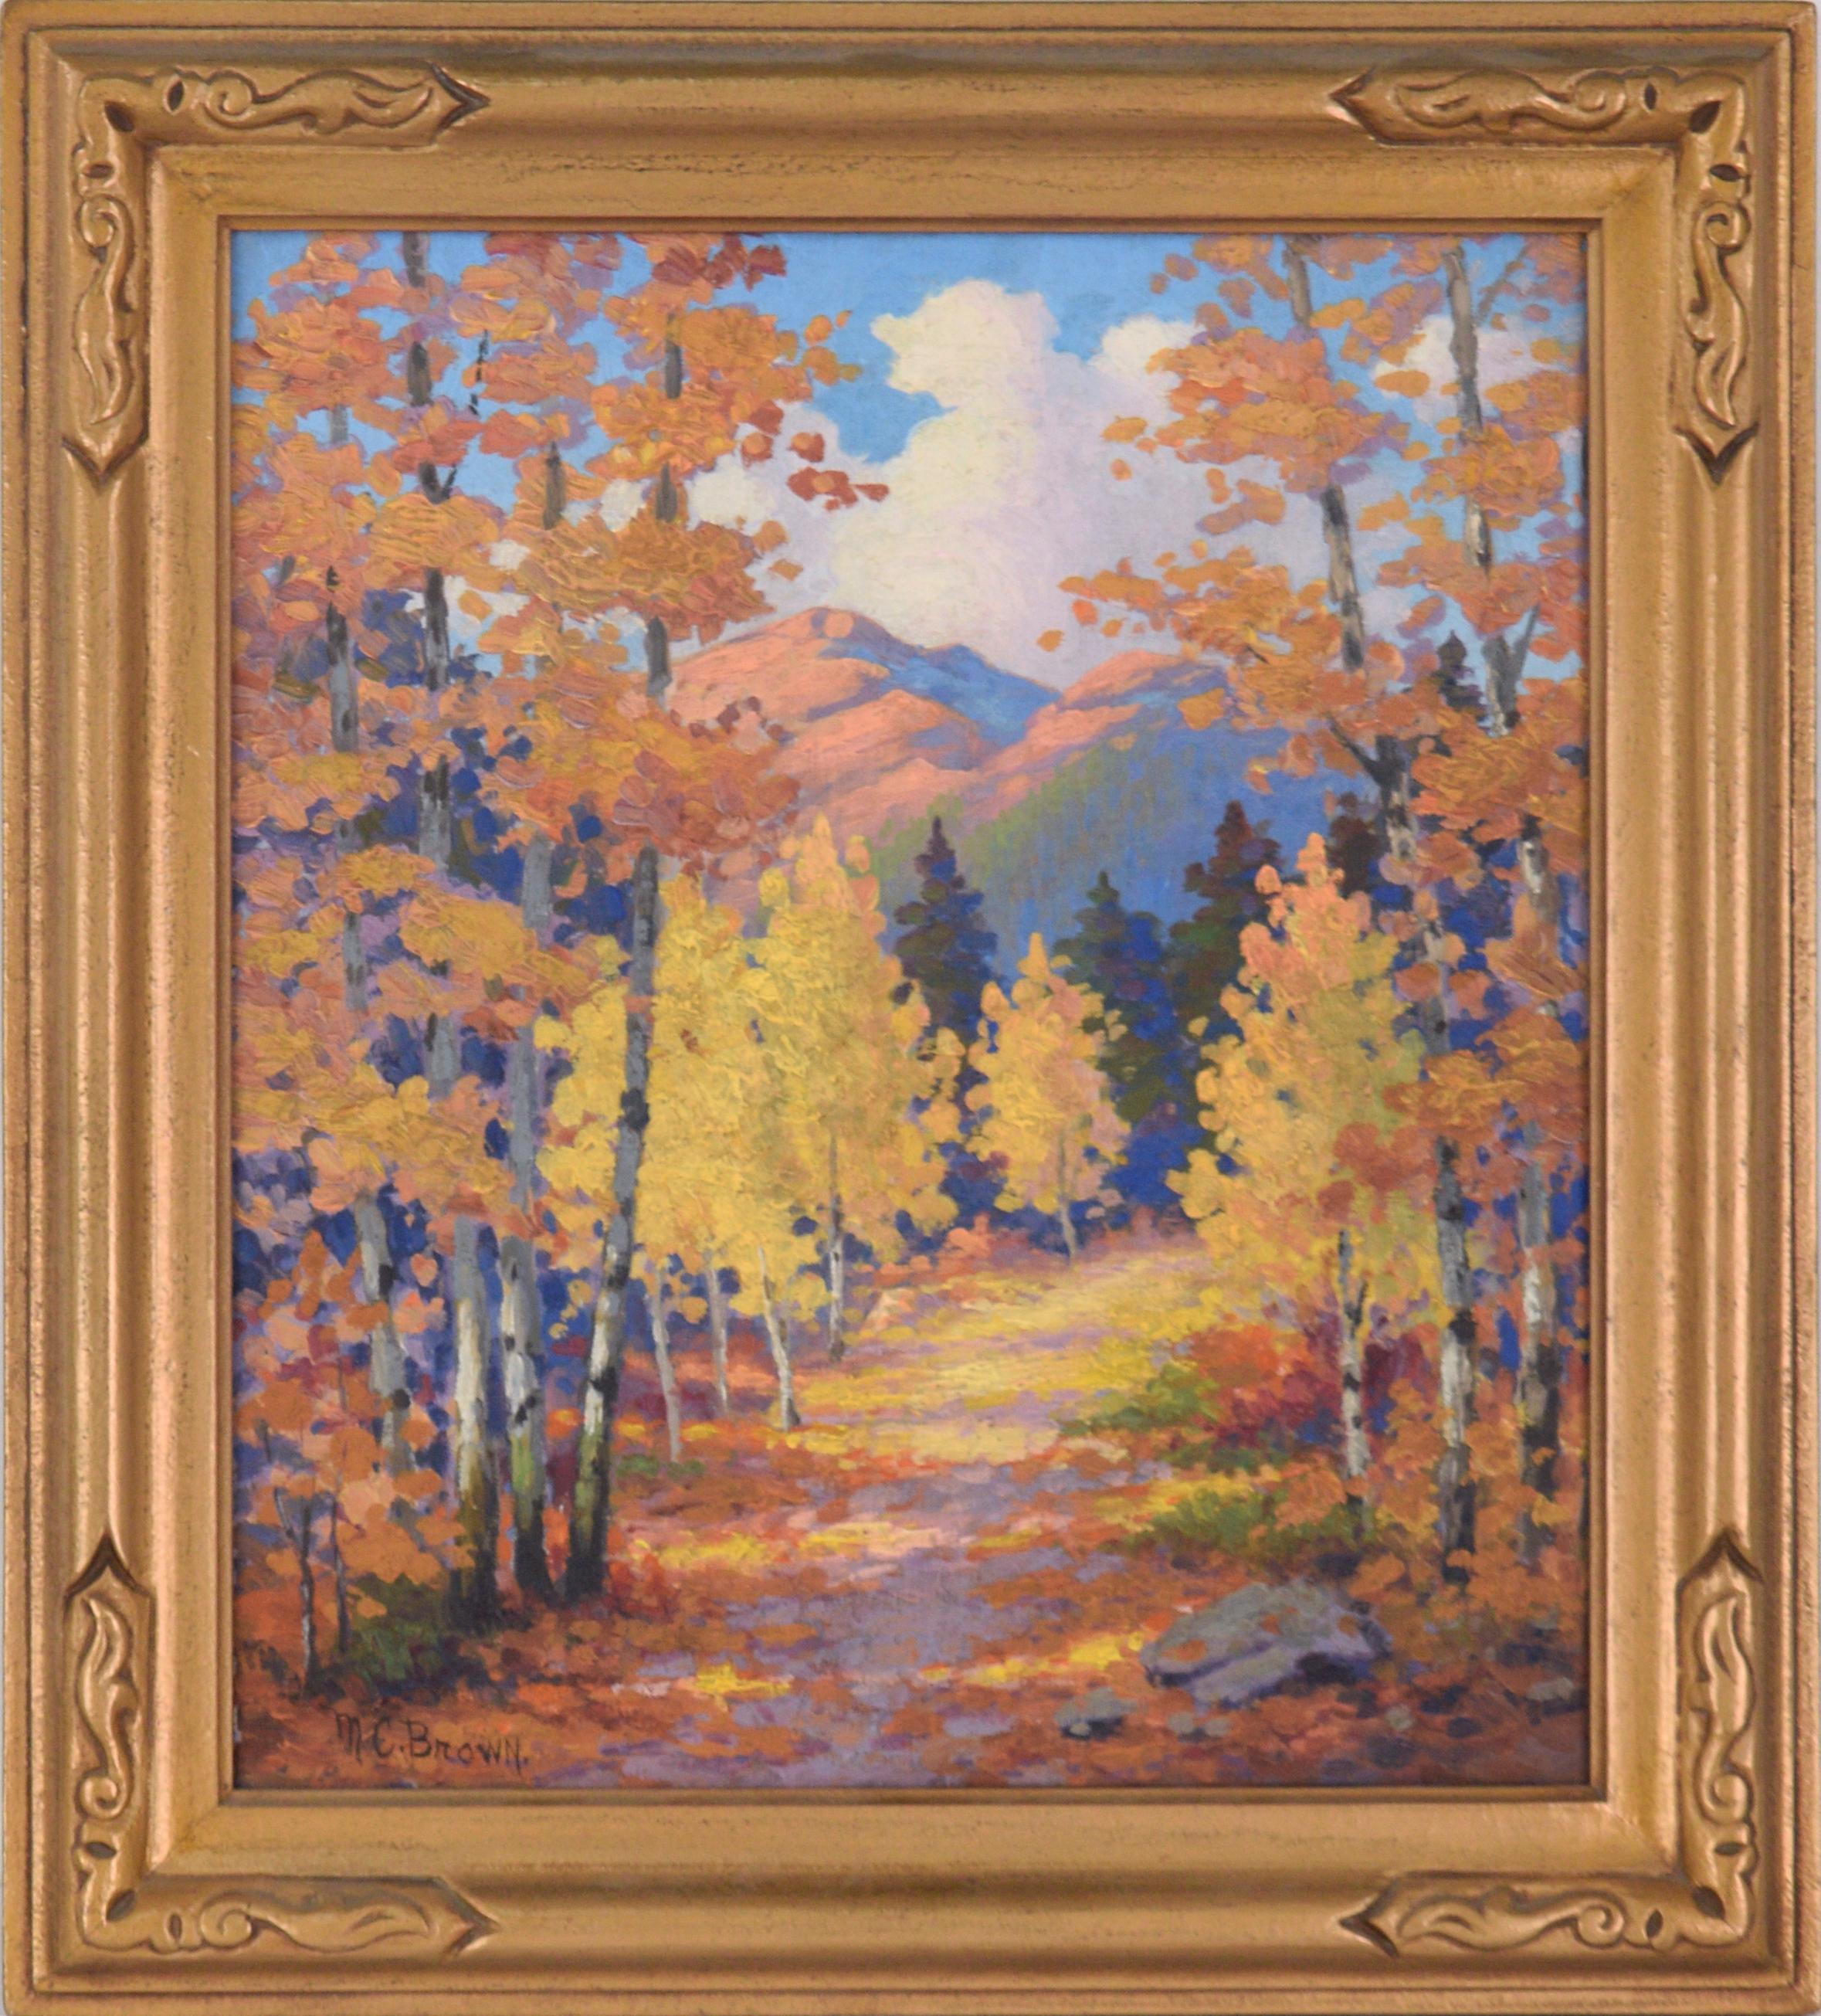 MC Brown Landscape Painting - Fallen Leaves on the Path at Estes Park, Colorado - Autumn Landscape 1940